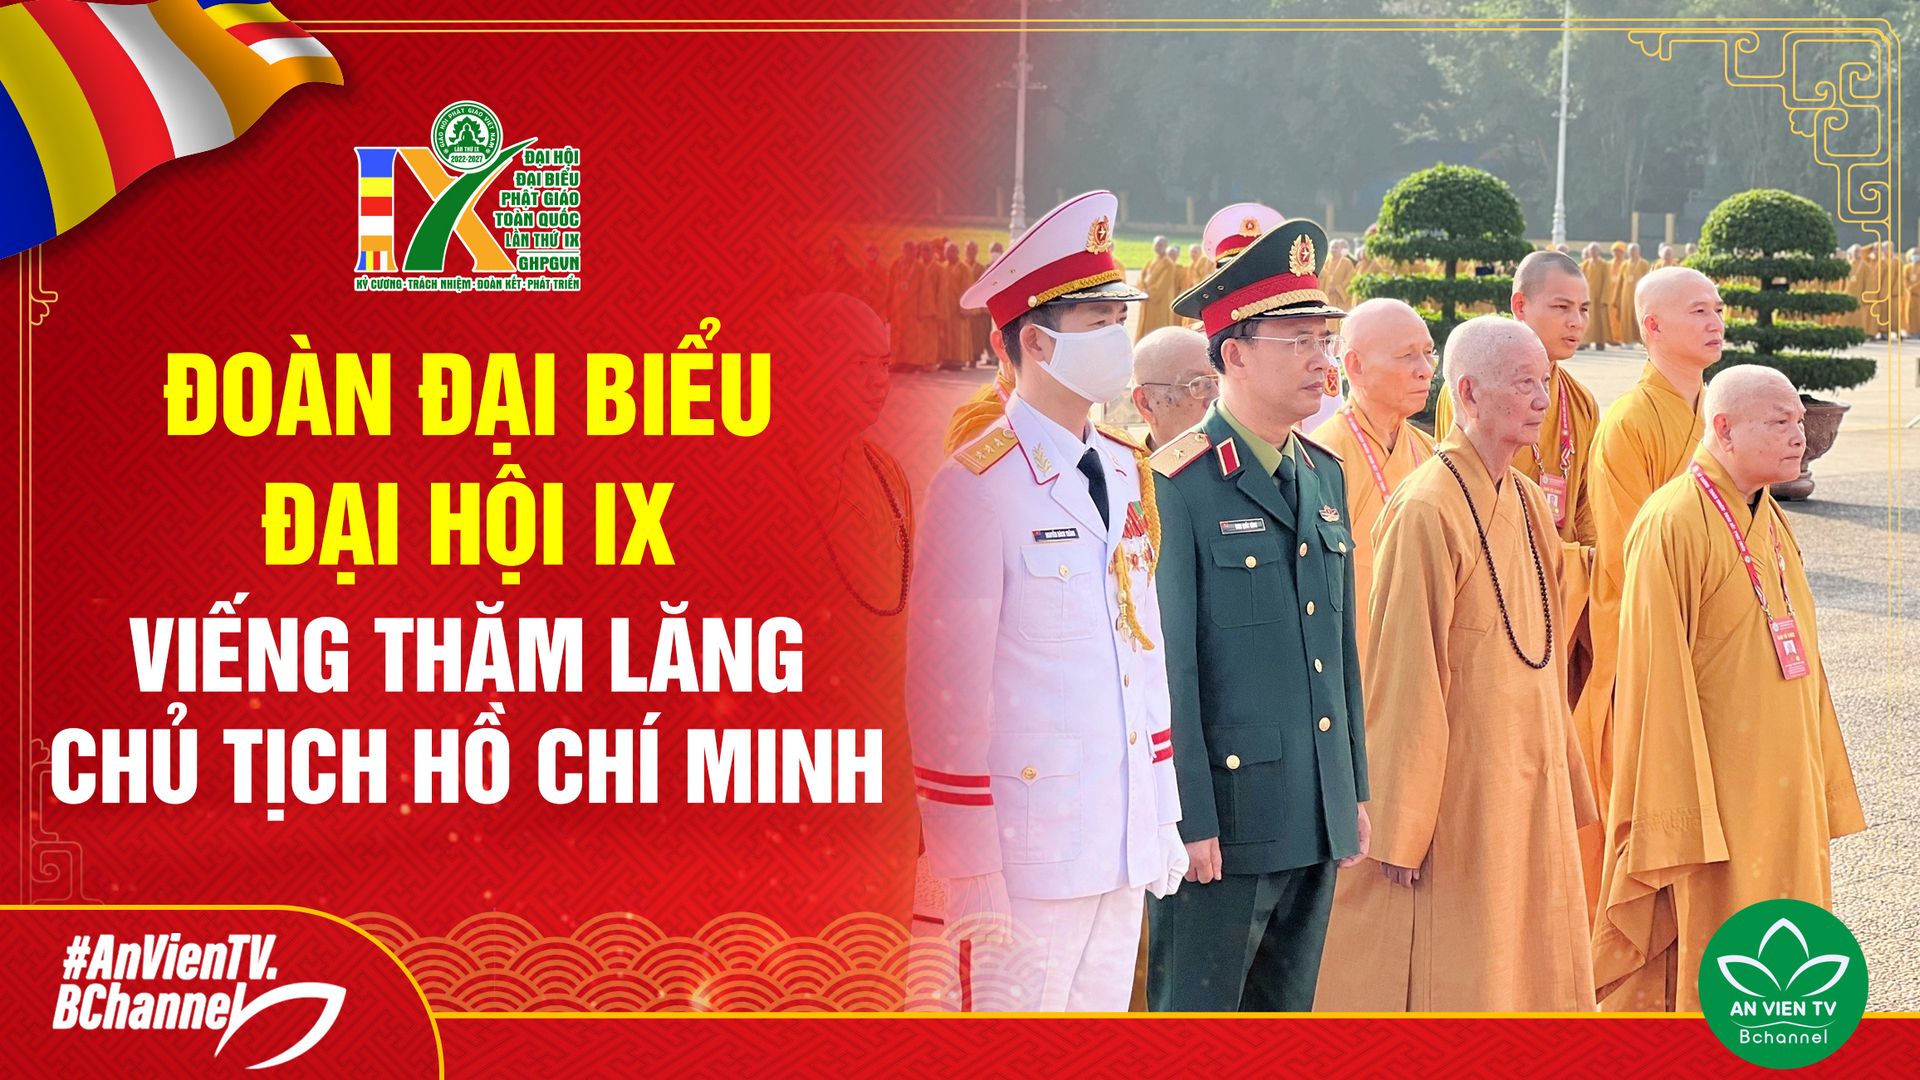 Đoàn Đại biểu Đại hội IX viếng Lăng Chủ tịch Hồ Chí Minh